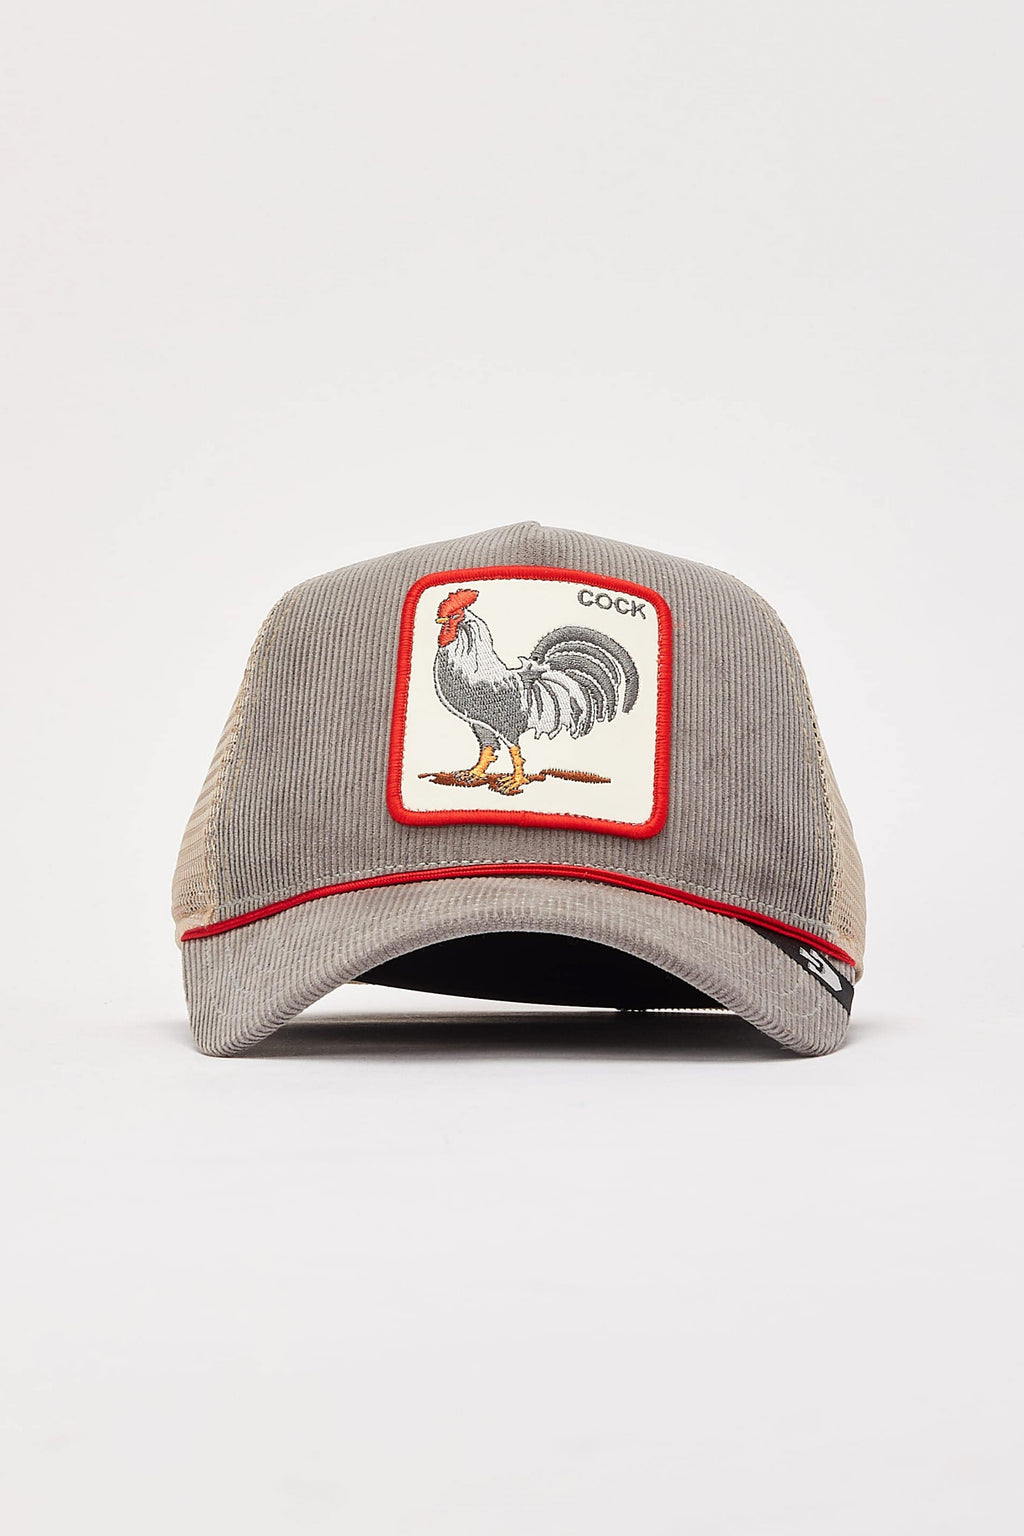 The Arena Trucker Hat